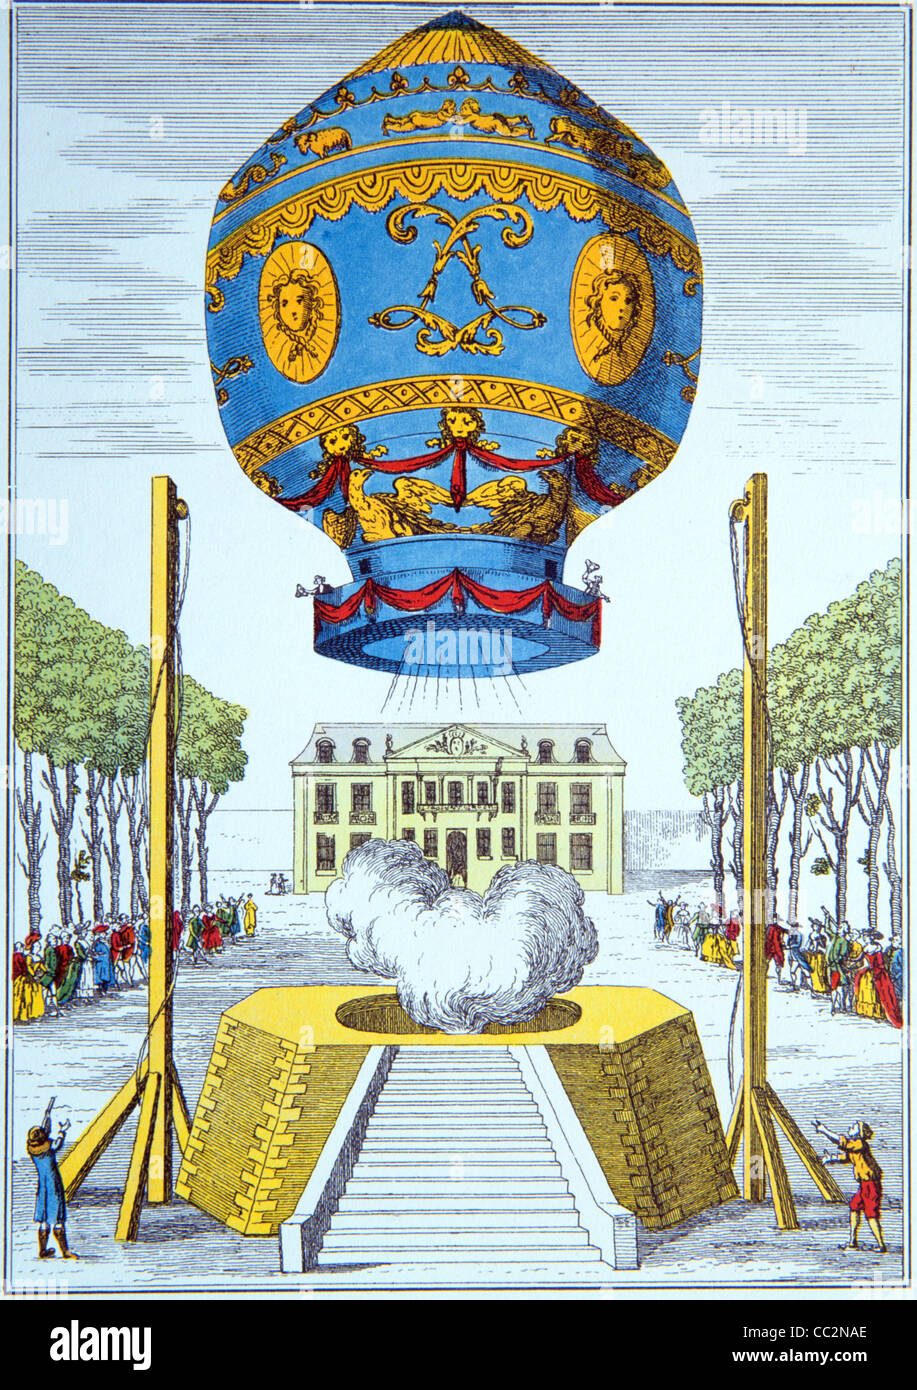 Ballon d'air chaud Montgolfier Brothers. Jeune fille ou le premier vol au monde d'un ballon à air chaud, Paris, novembre 1783. c19th gravure ou illustration Banque D'Images